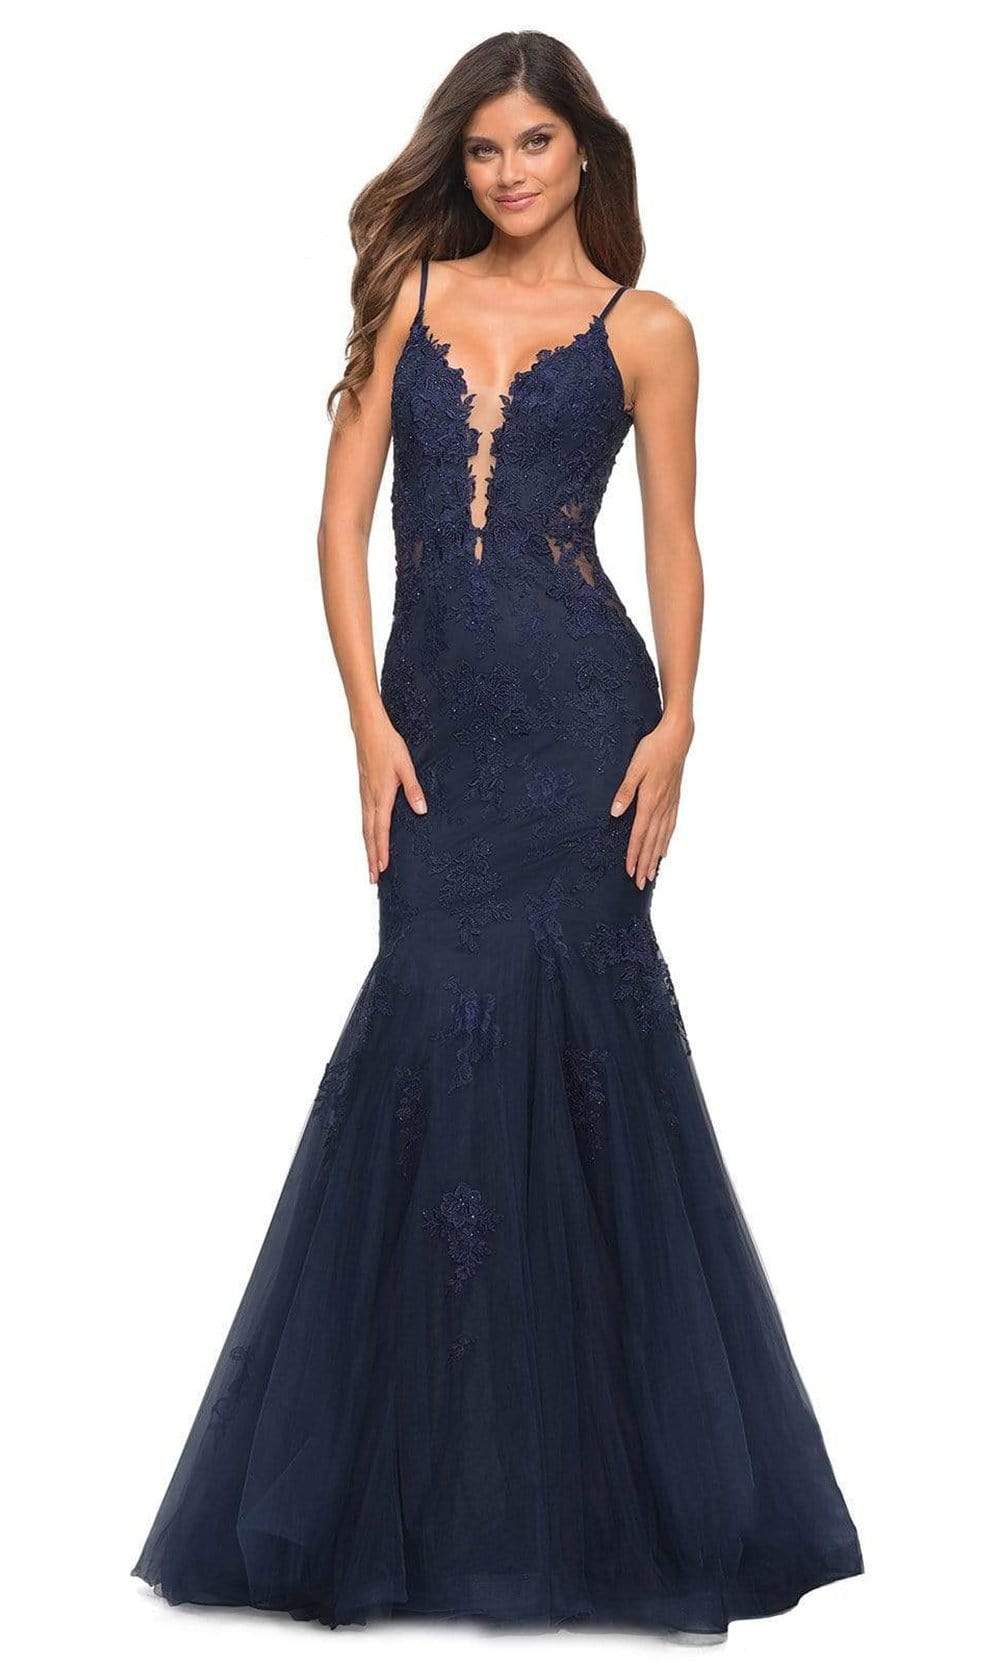 La Femme - 29680 V-Neck Lace Appliqued Gown Special Occasion Dress